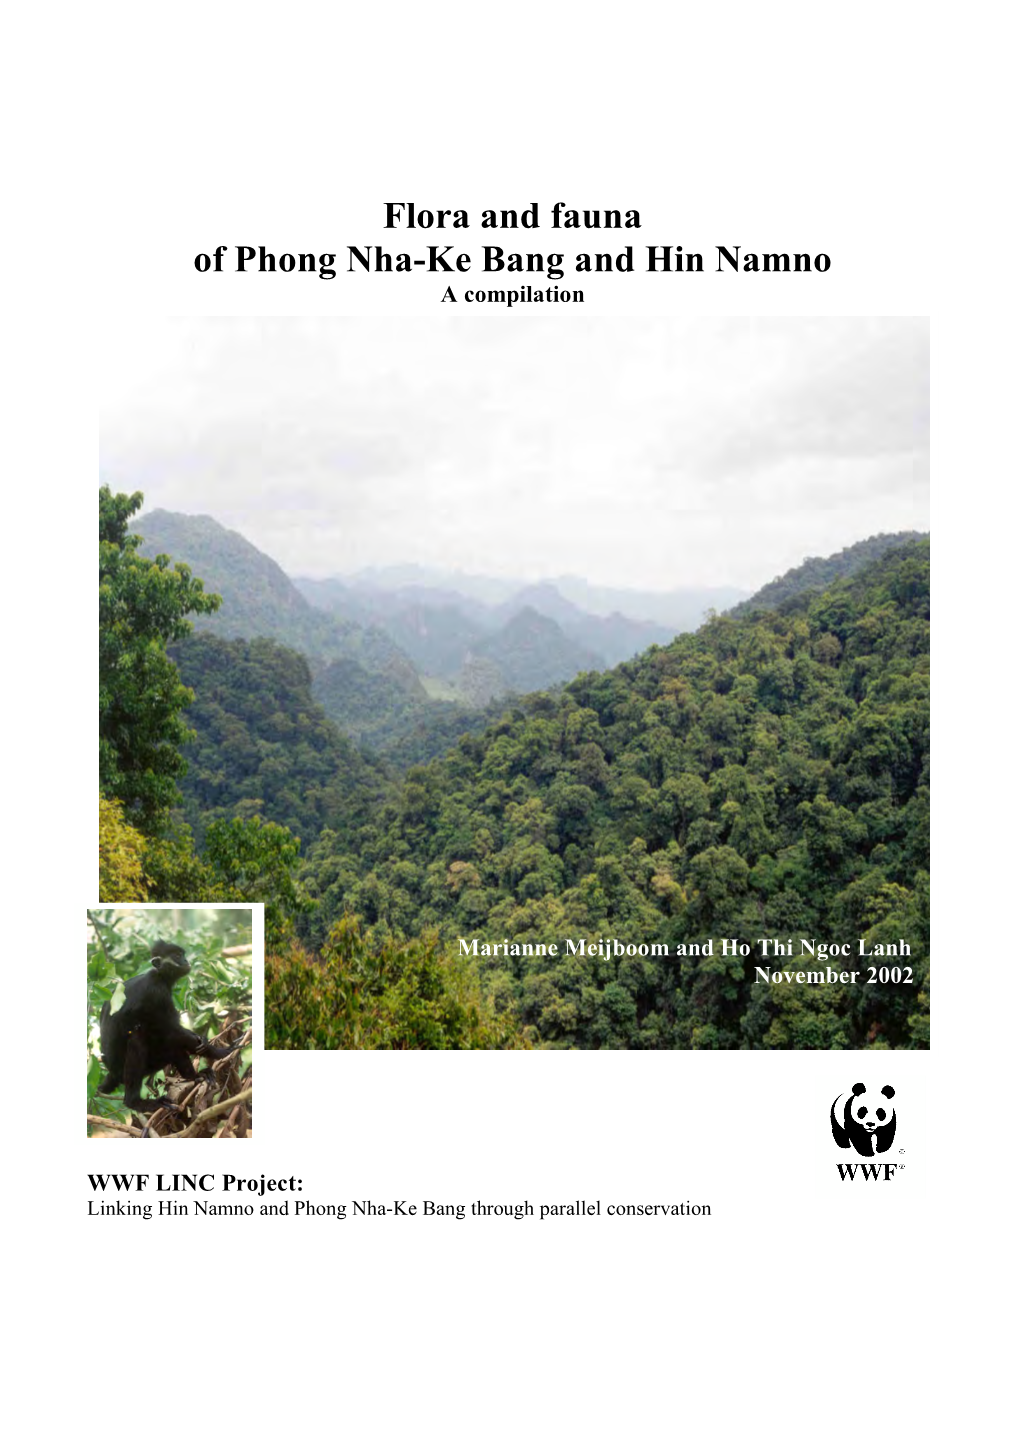 Flora and Fauna of Phong Nha-Ke Bang and Hin Namno, a Compilation Page 2 of 151